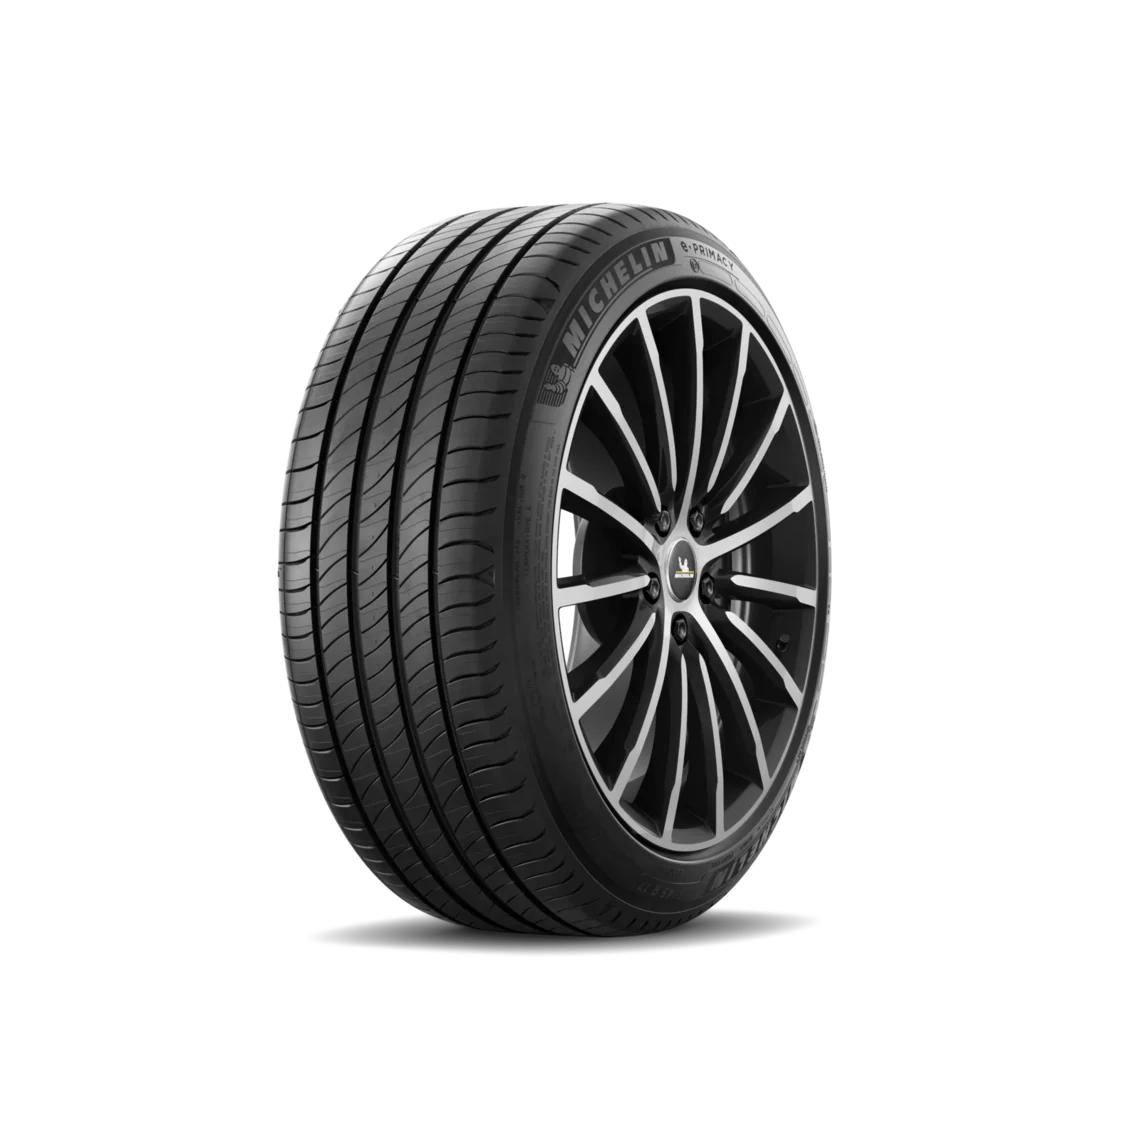 Michelin Michelin 205/55 R19 97V E.PRIMACY XL pneumatici nuovi Estivo 